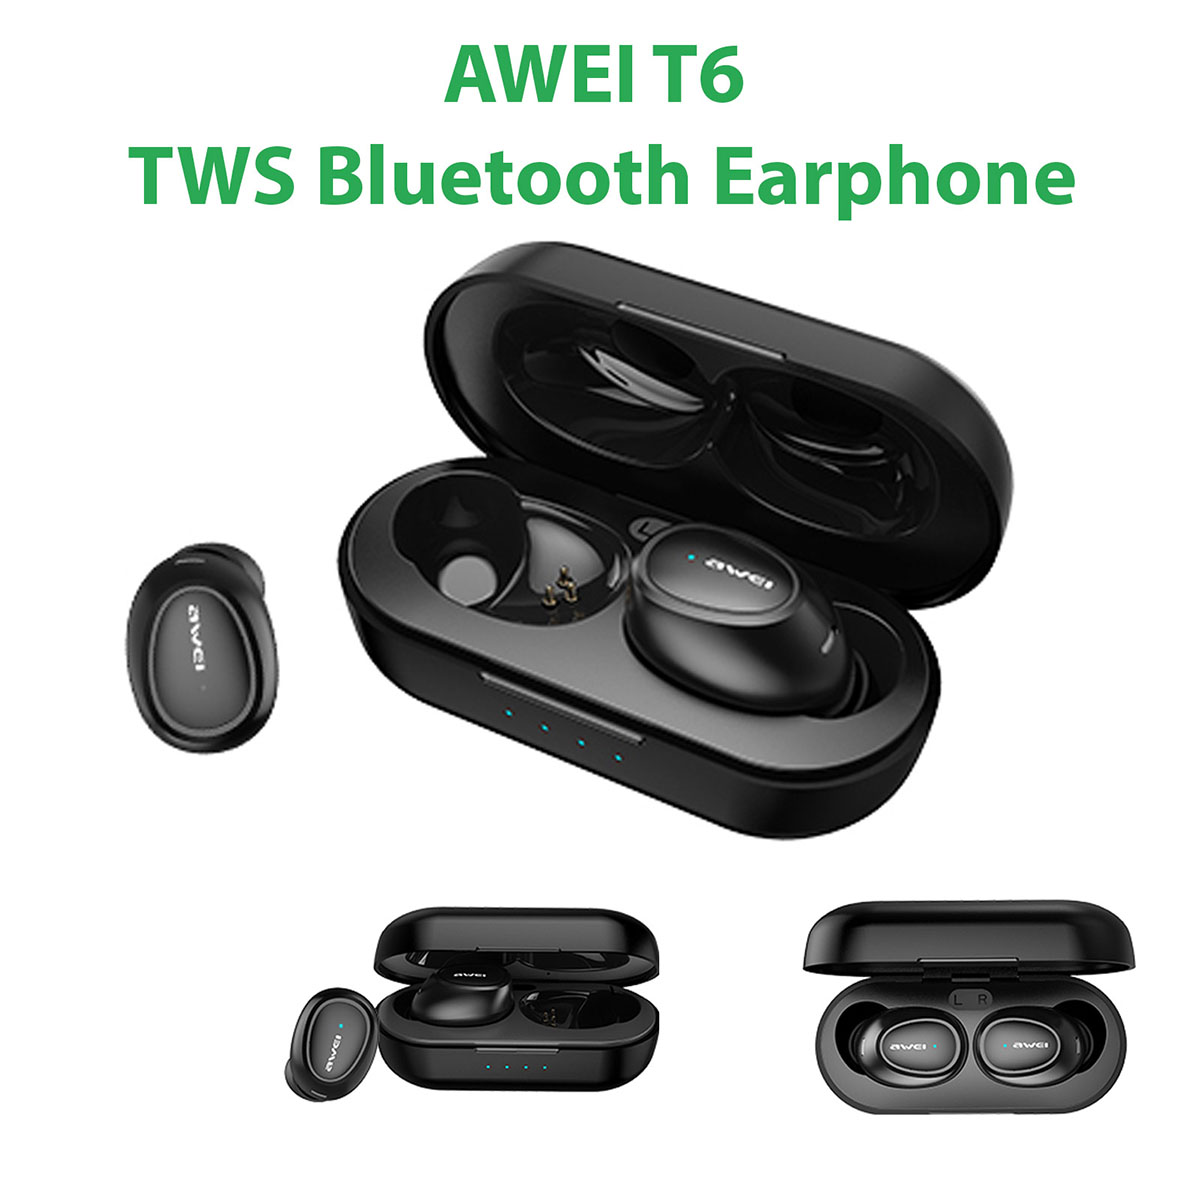 Гарнитура (наушники с микрофоном) беспроводная, AWEI T6 TWS Bluetooth Earphone, цвет черный.